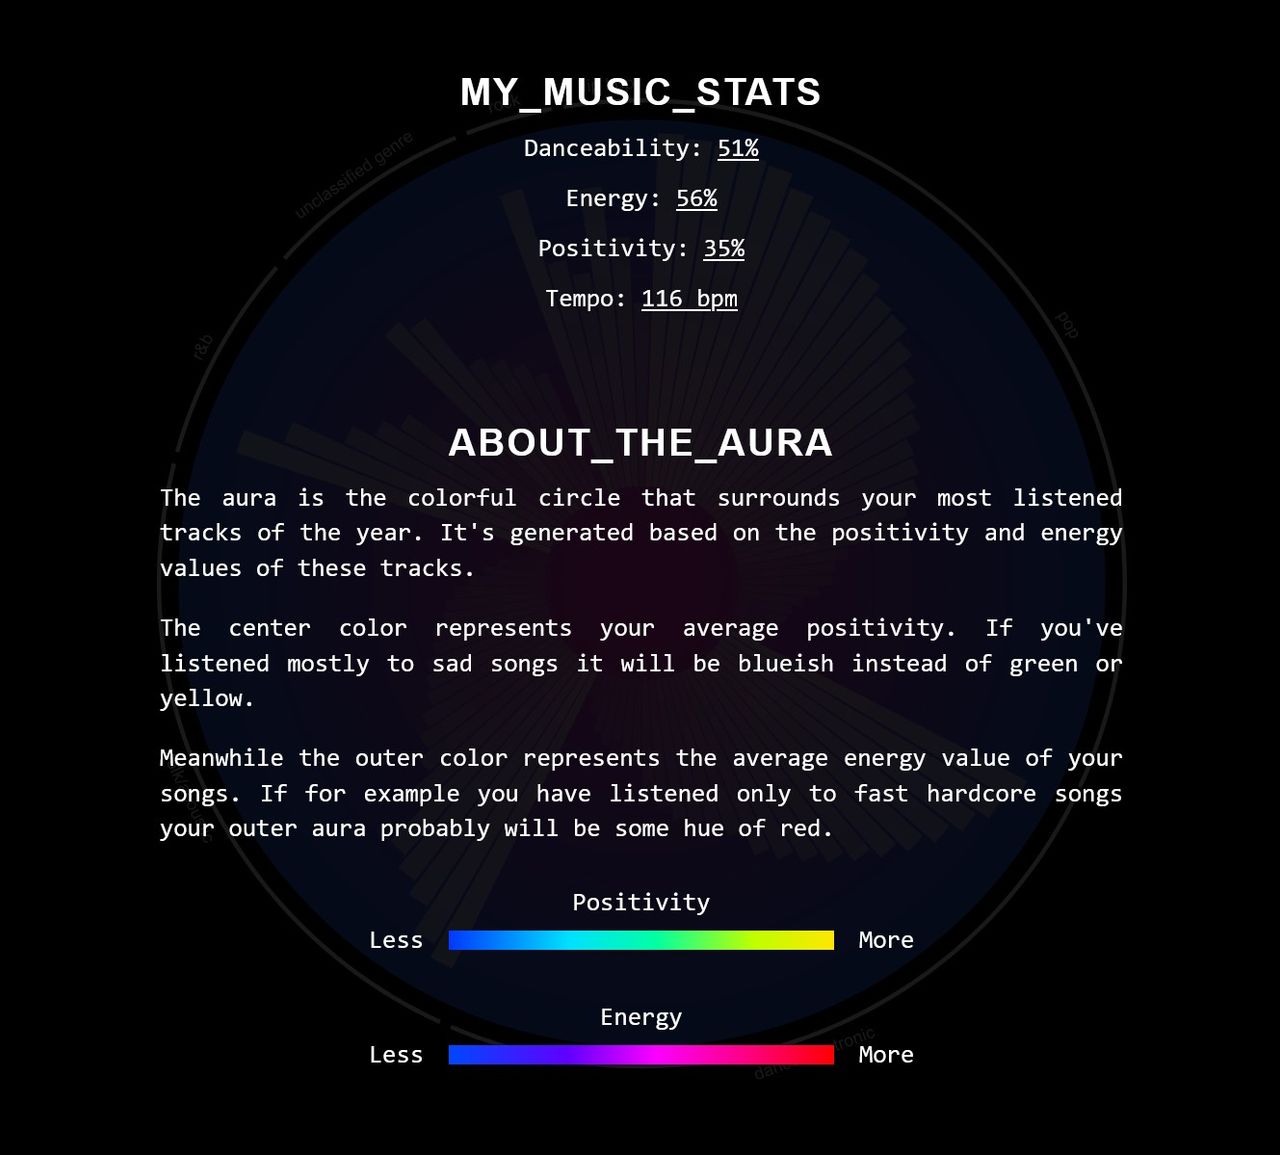 Die Infoansicht der Web-App zeigt verschiedene Statistiken wie die durchschnittliche Geschwindigkeit, Energie, Positivität und Tanzbarkeit der meistgehörten Songs. Ausserdem wird erklärt, wie die farbliche Aura zu interpretieren ist.